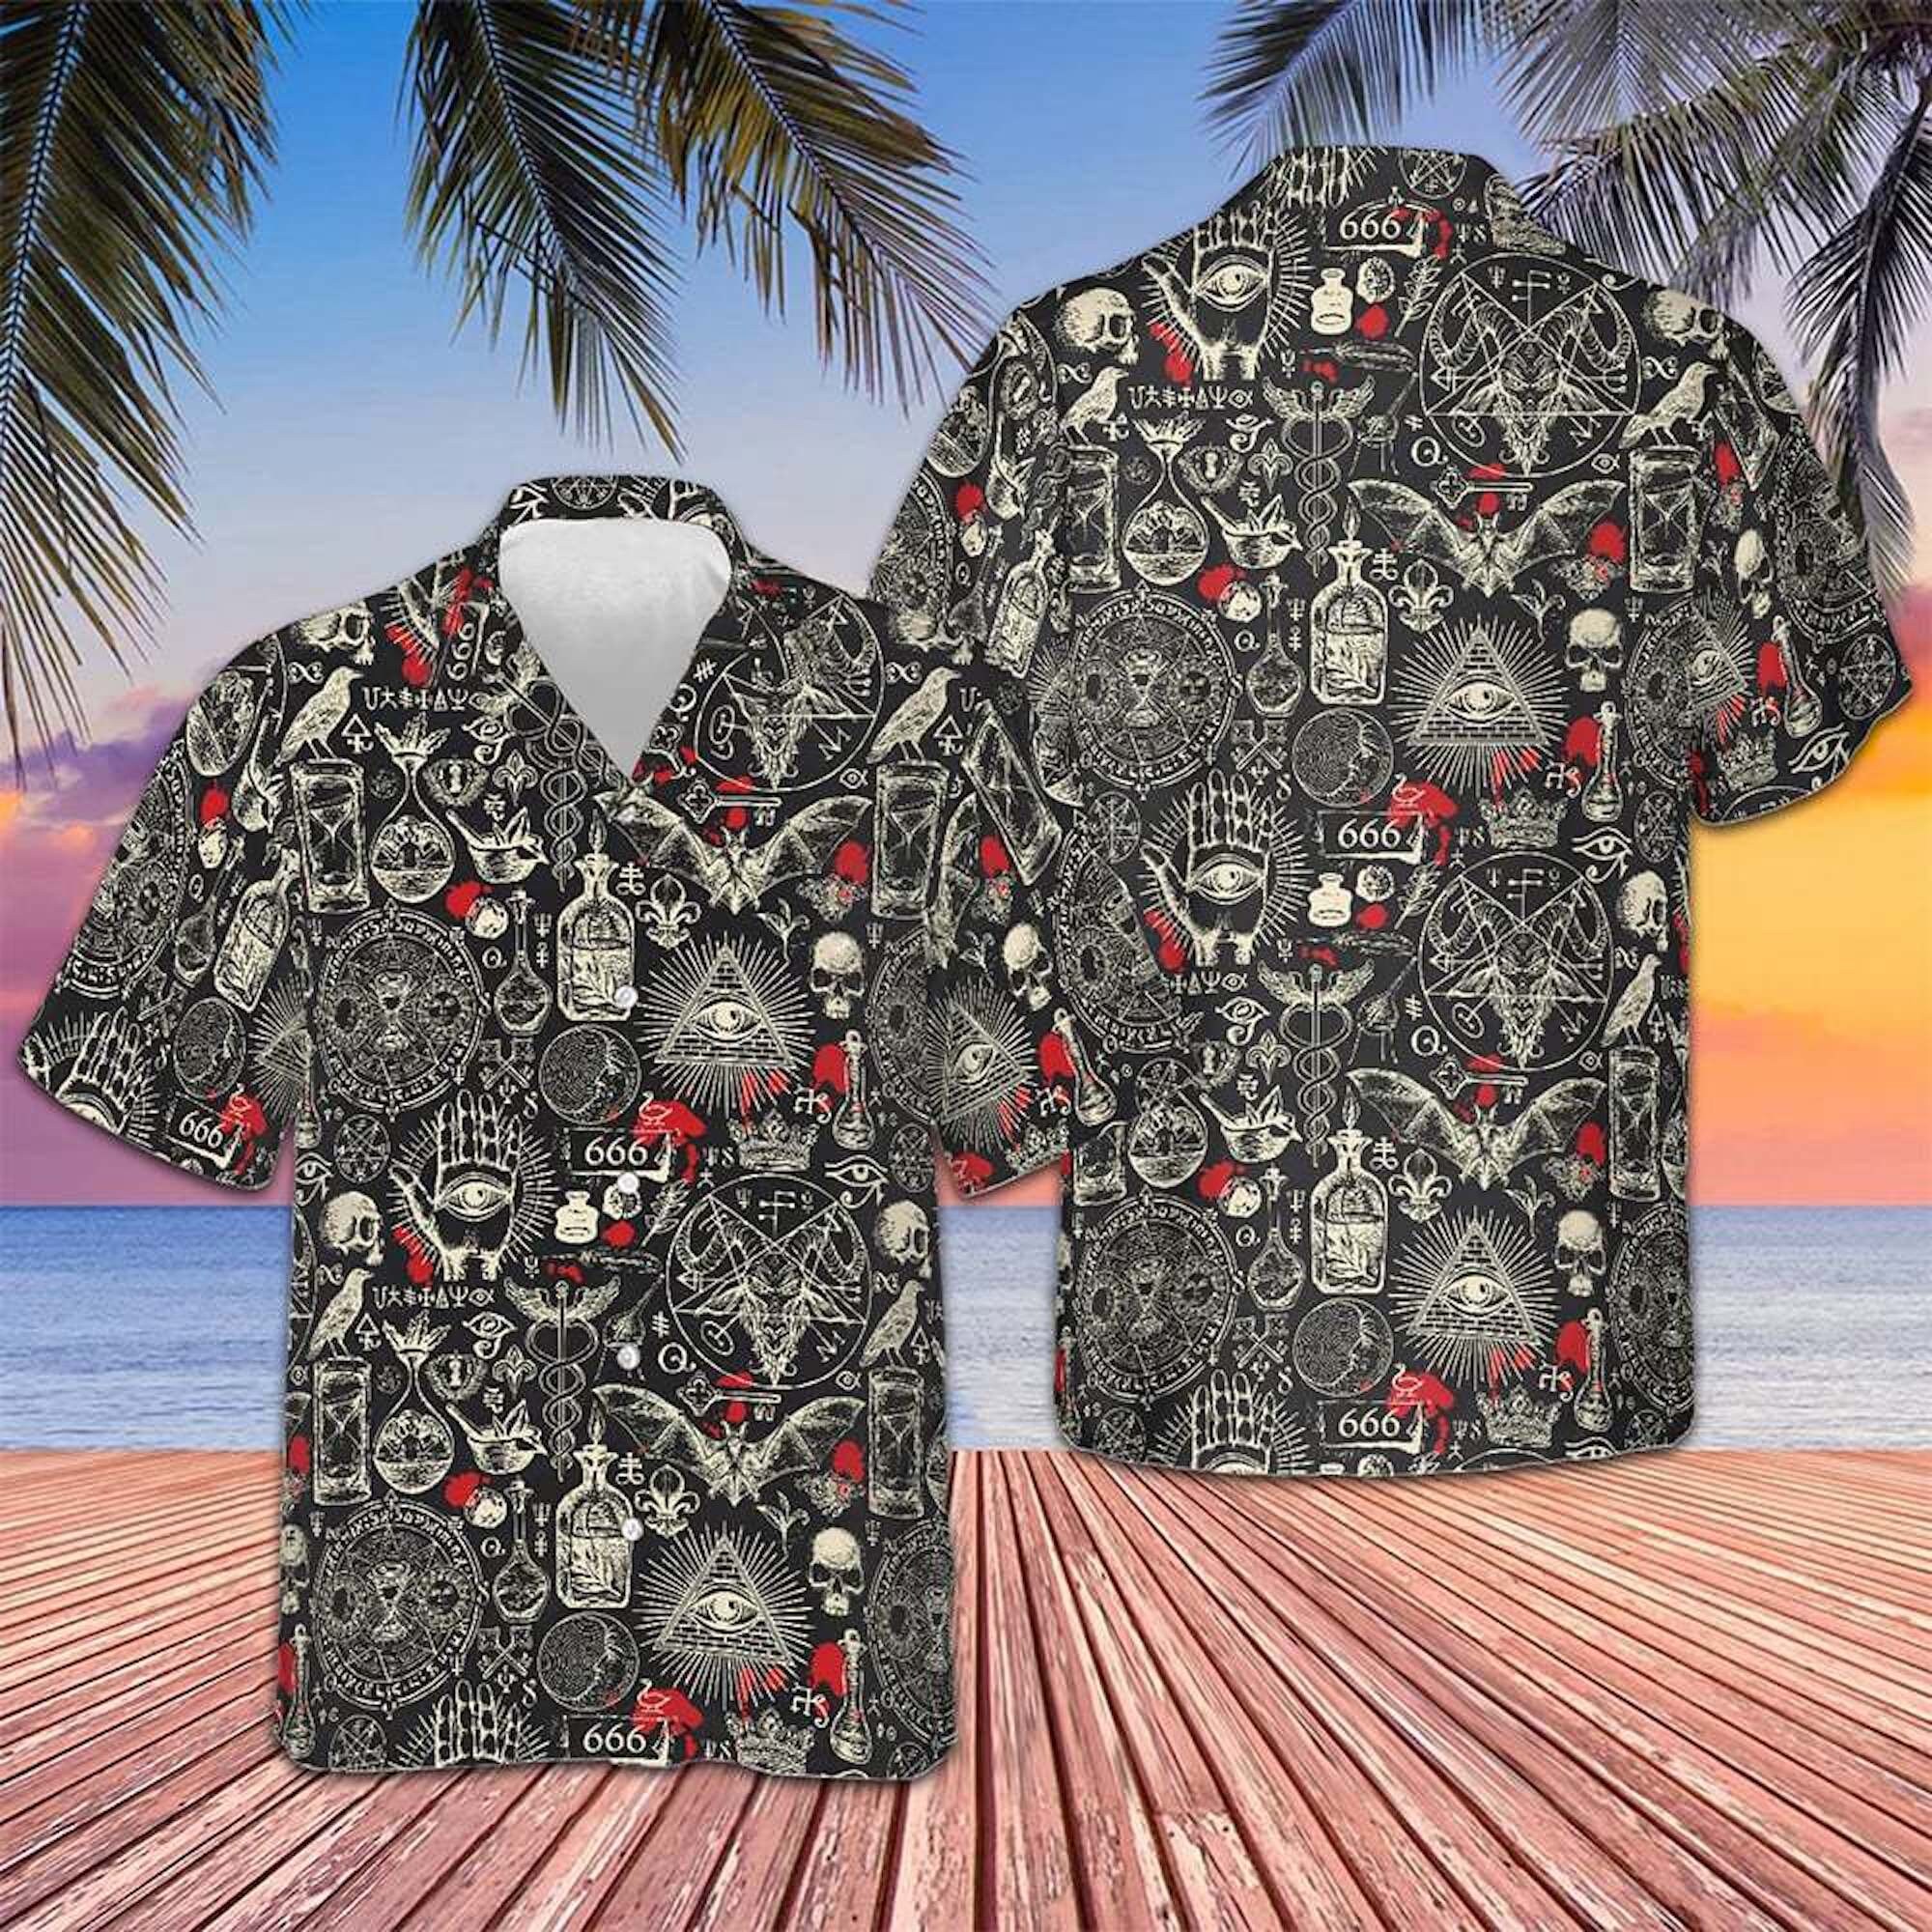 Custom Name Red 3 Heads Skeletons Skull Baseball Jersey For Men And Women  Gift Halloween - Banantees